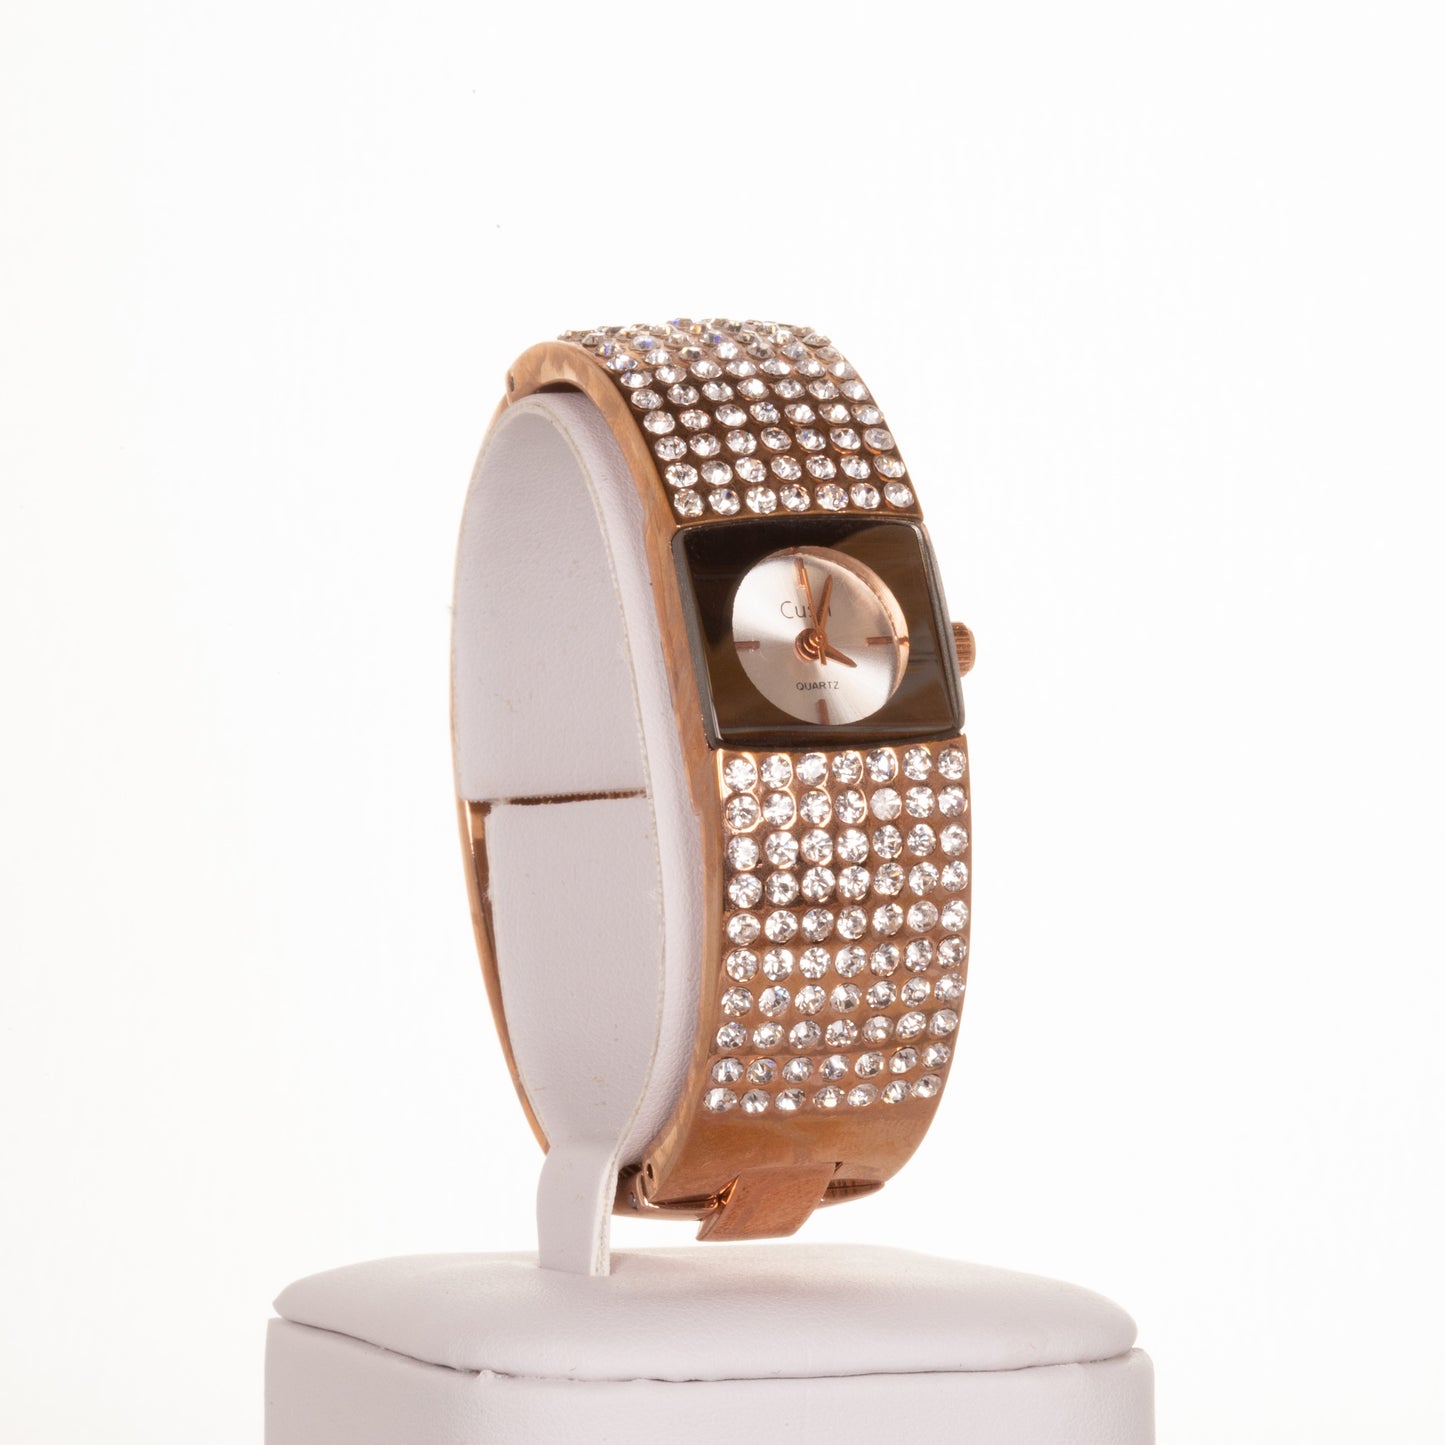 CUSSI dámské hodinky v barvě růžového zlata se 7 řadami krystalů křemene